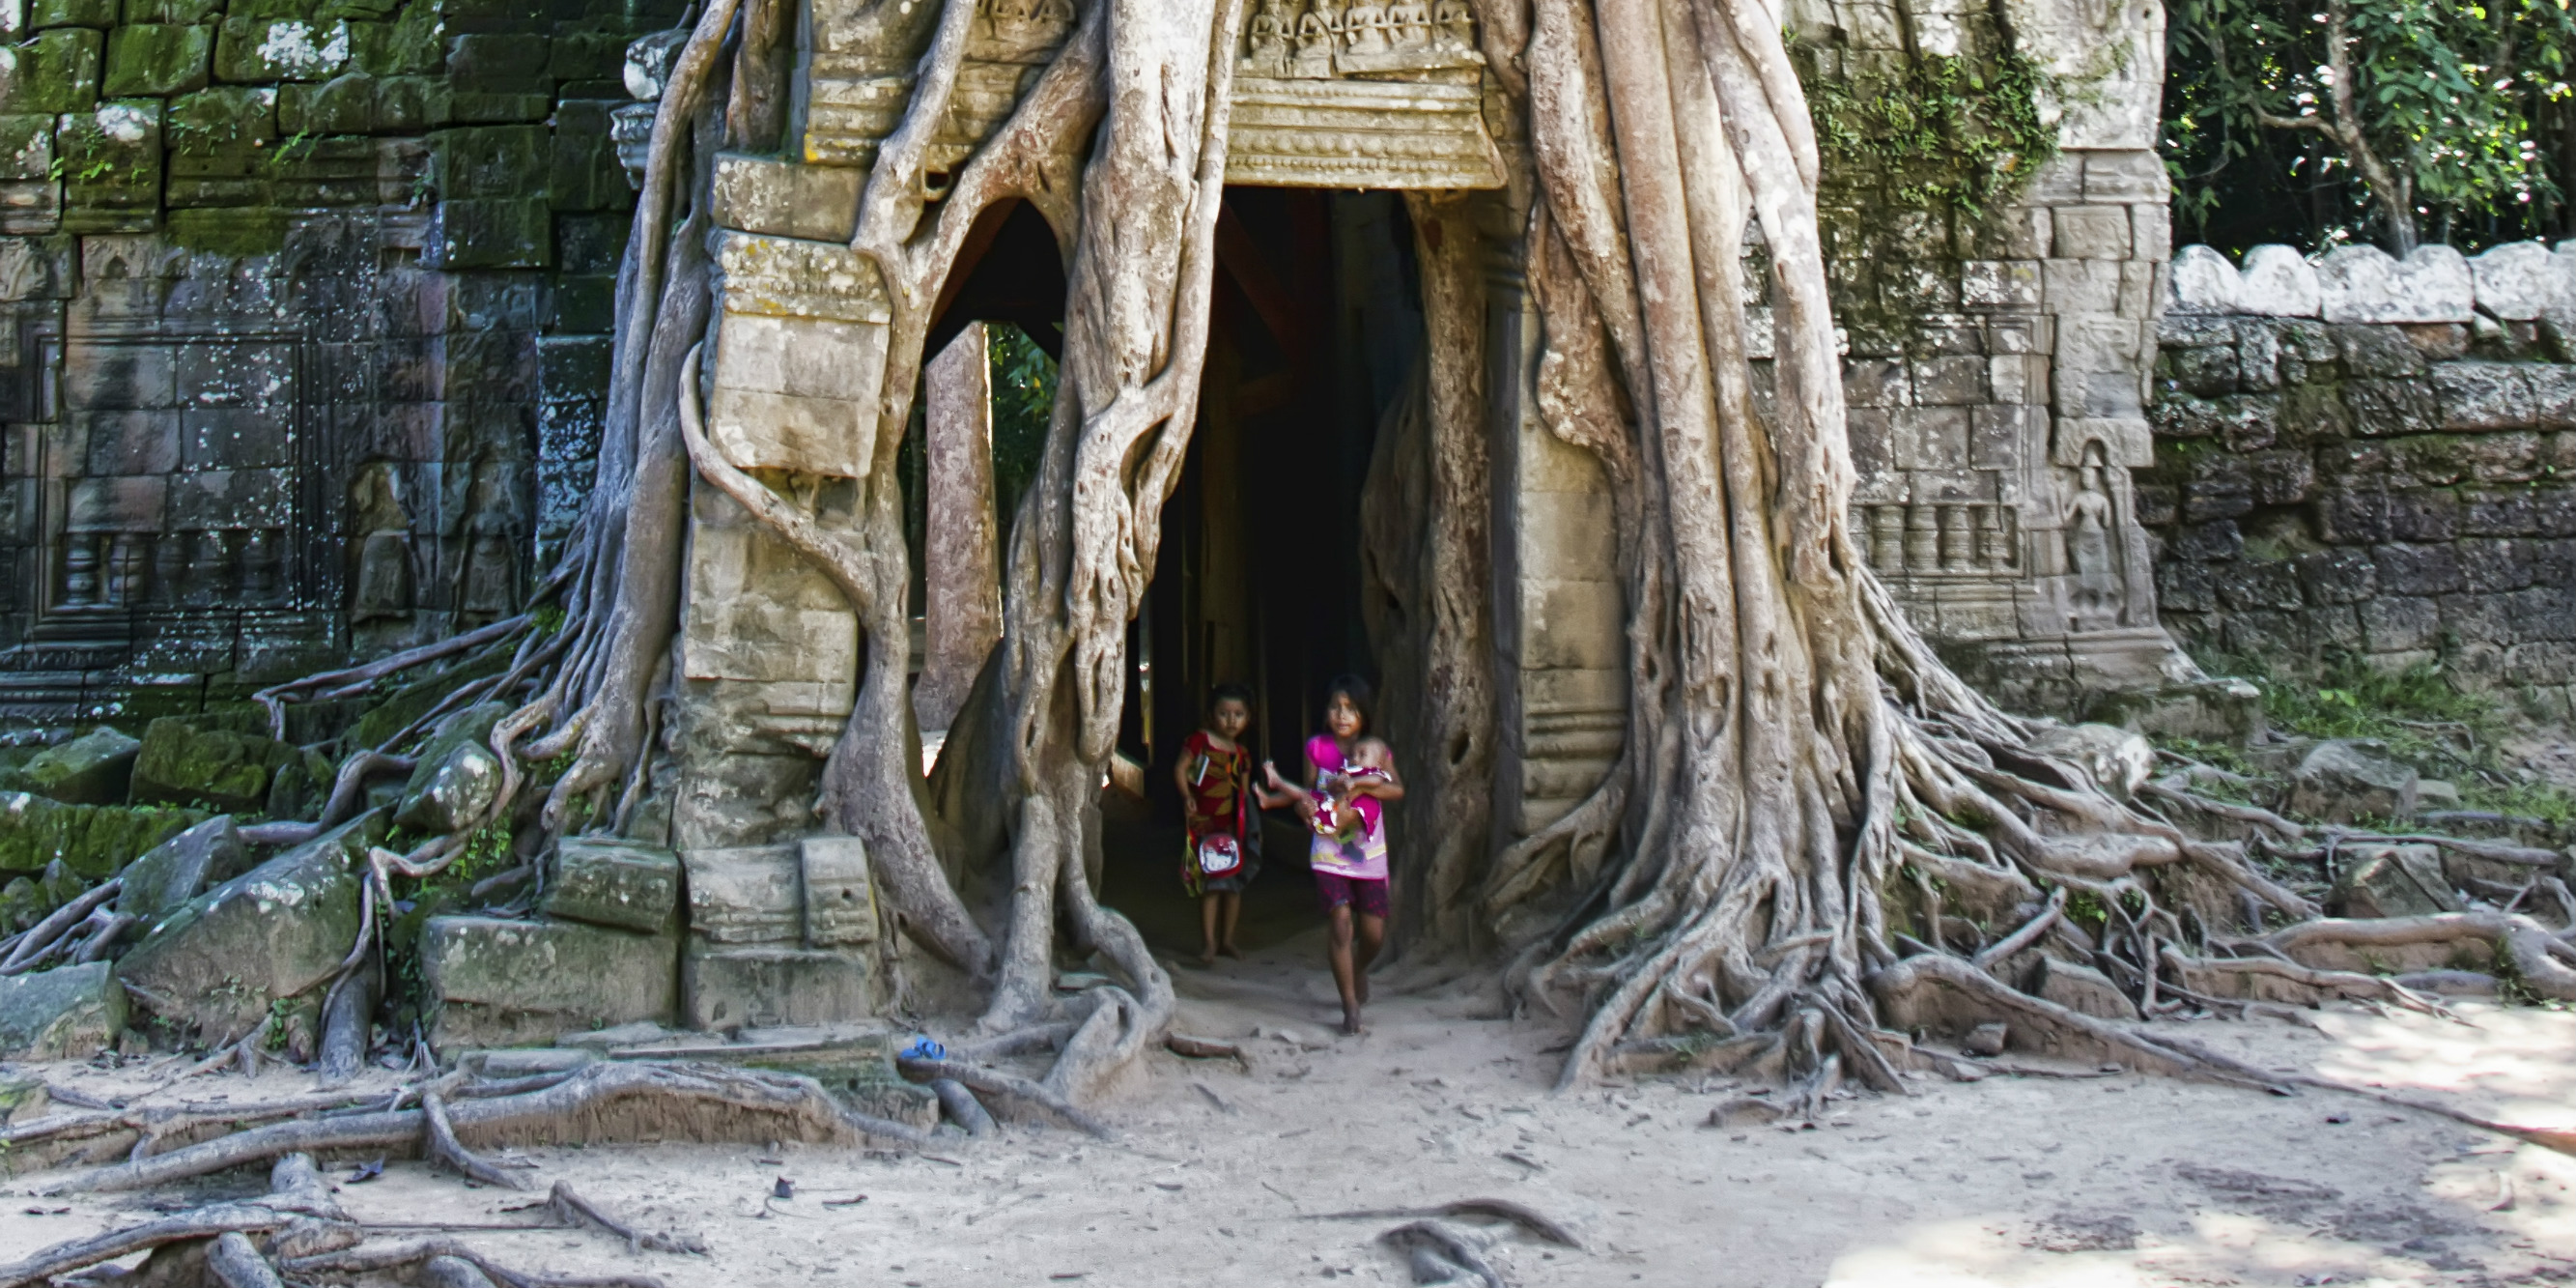 Visiting the Angkor Wat temples